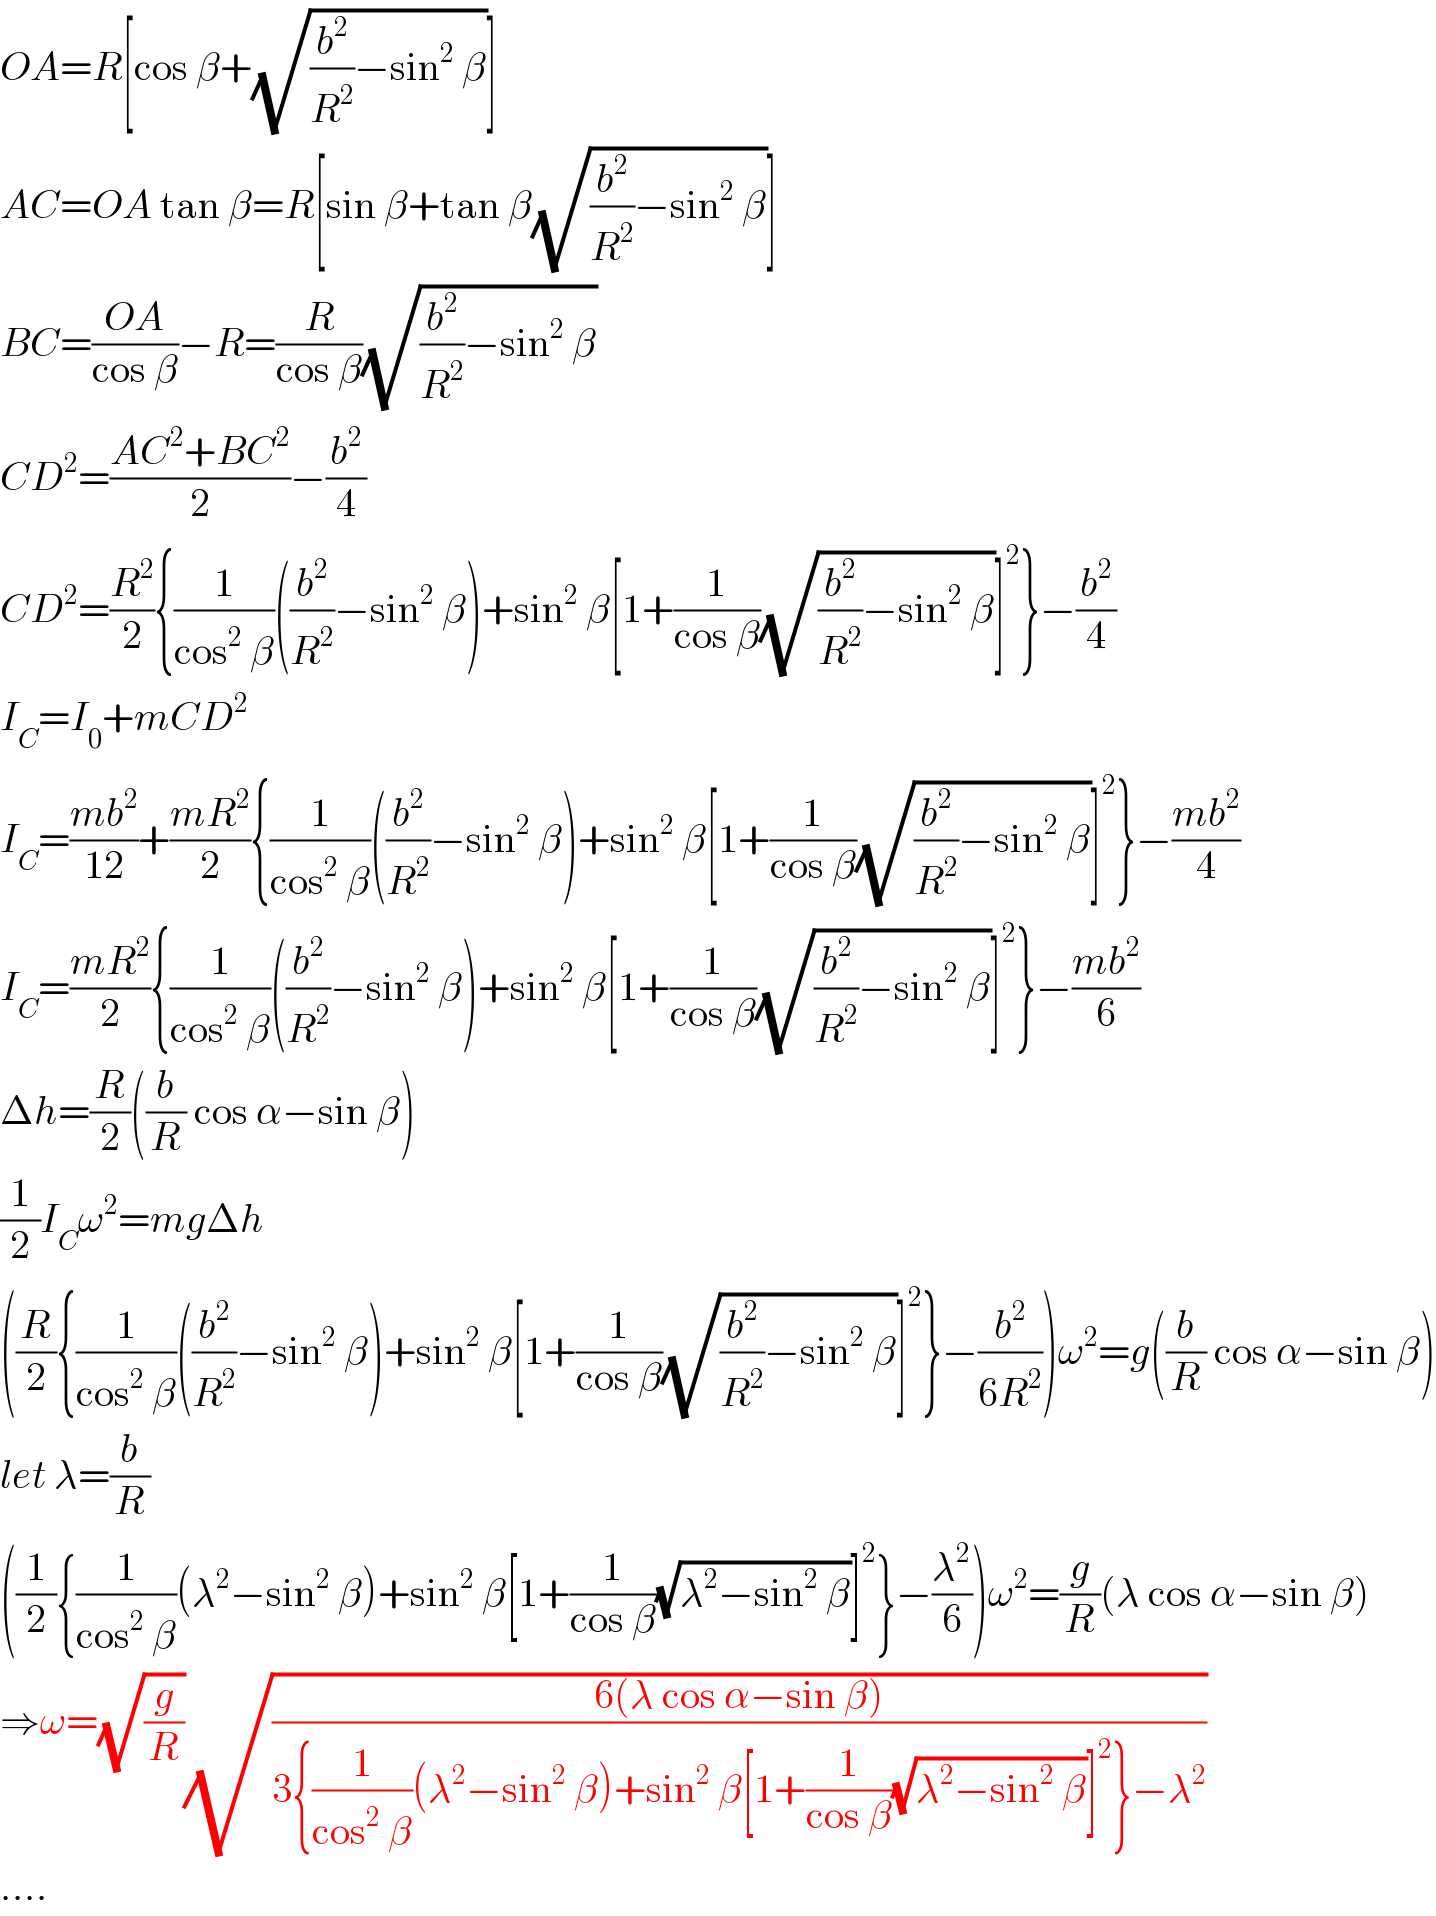 OA=R[cos β+(√((b^2 /R^2 )−sin^2  β))]  AC=OA tan β=R[sin β+tan β(√((b^2 /R^2 )−sin^2  β))]  BC=((OA)/(cos β))−R=(R/(cos β))(√((b^2 /R^2 )−sin^2  β))  CD^2 =((AC^2 +BC^2 )/2)−(b^2 /4)  CD^2 =(R^2 /2){(1/(cos^2  β))((b^2 /R^2 )−sin^2  β)+sin^2  β[1+(1/(cos β))(√((b^2 /R^2 )−sin^2  β))]^2 }−(b^2 /4)  I_C =I_0 +mCD^2   I_C =((mb^2 )/(12))+((mR^2 )/2){(1/(cos^2  β))((b^2 /R^2 )−sin^2  β)+sin^2  β[1+(1/(cos β))(√((b^2 /R^2 )−sin^2  β))]^2 }−((mb^2 )/4)  I_C =((mR^2 )/2){(1/(cos^2  β))((b^2 /R^2 )−sin^2  β)+sin^2  β[1+(1/(cos β))(√((b^2 /R^2 )−sin^2  β))]^2 }−((mb^2 )/6)  Δh=(R/2)((b/R) cos α−sin β)  (1/2)I_C ω^2 =mgΔh  ((R/2){(1/(cos^2  β))((b^2 /R^2 )−sin^2  β)+sin^2  β[1+(1/(cos β))(√((b^2 /R^2 )−sin^2  β))]^2 }−(b^2 /(6R^2 )))ω^2 =g((b/R) cos α−sin β)  let λ=(b/R)  ((1/2){(1/(cos^2  β))(λ^2 −sin^2  β)+sin^2  β[1+(1/(cos β))(√(λ^2 −sin^2  β))]^2 }−(λ^2 /6))ω^2 =(g/R)(λ cos α−sin β)  ⇒ω=(√(g/R))(√((6(λ cos α−sin β))/(3{(1/(cos^2  β))(λ^2 −sin^2  β)+sin^2  β[1+(1/(cos β))(√(λ^2 −sin^2  β))]^2 }−λ^2 )))  ....  